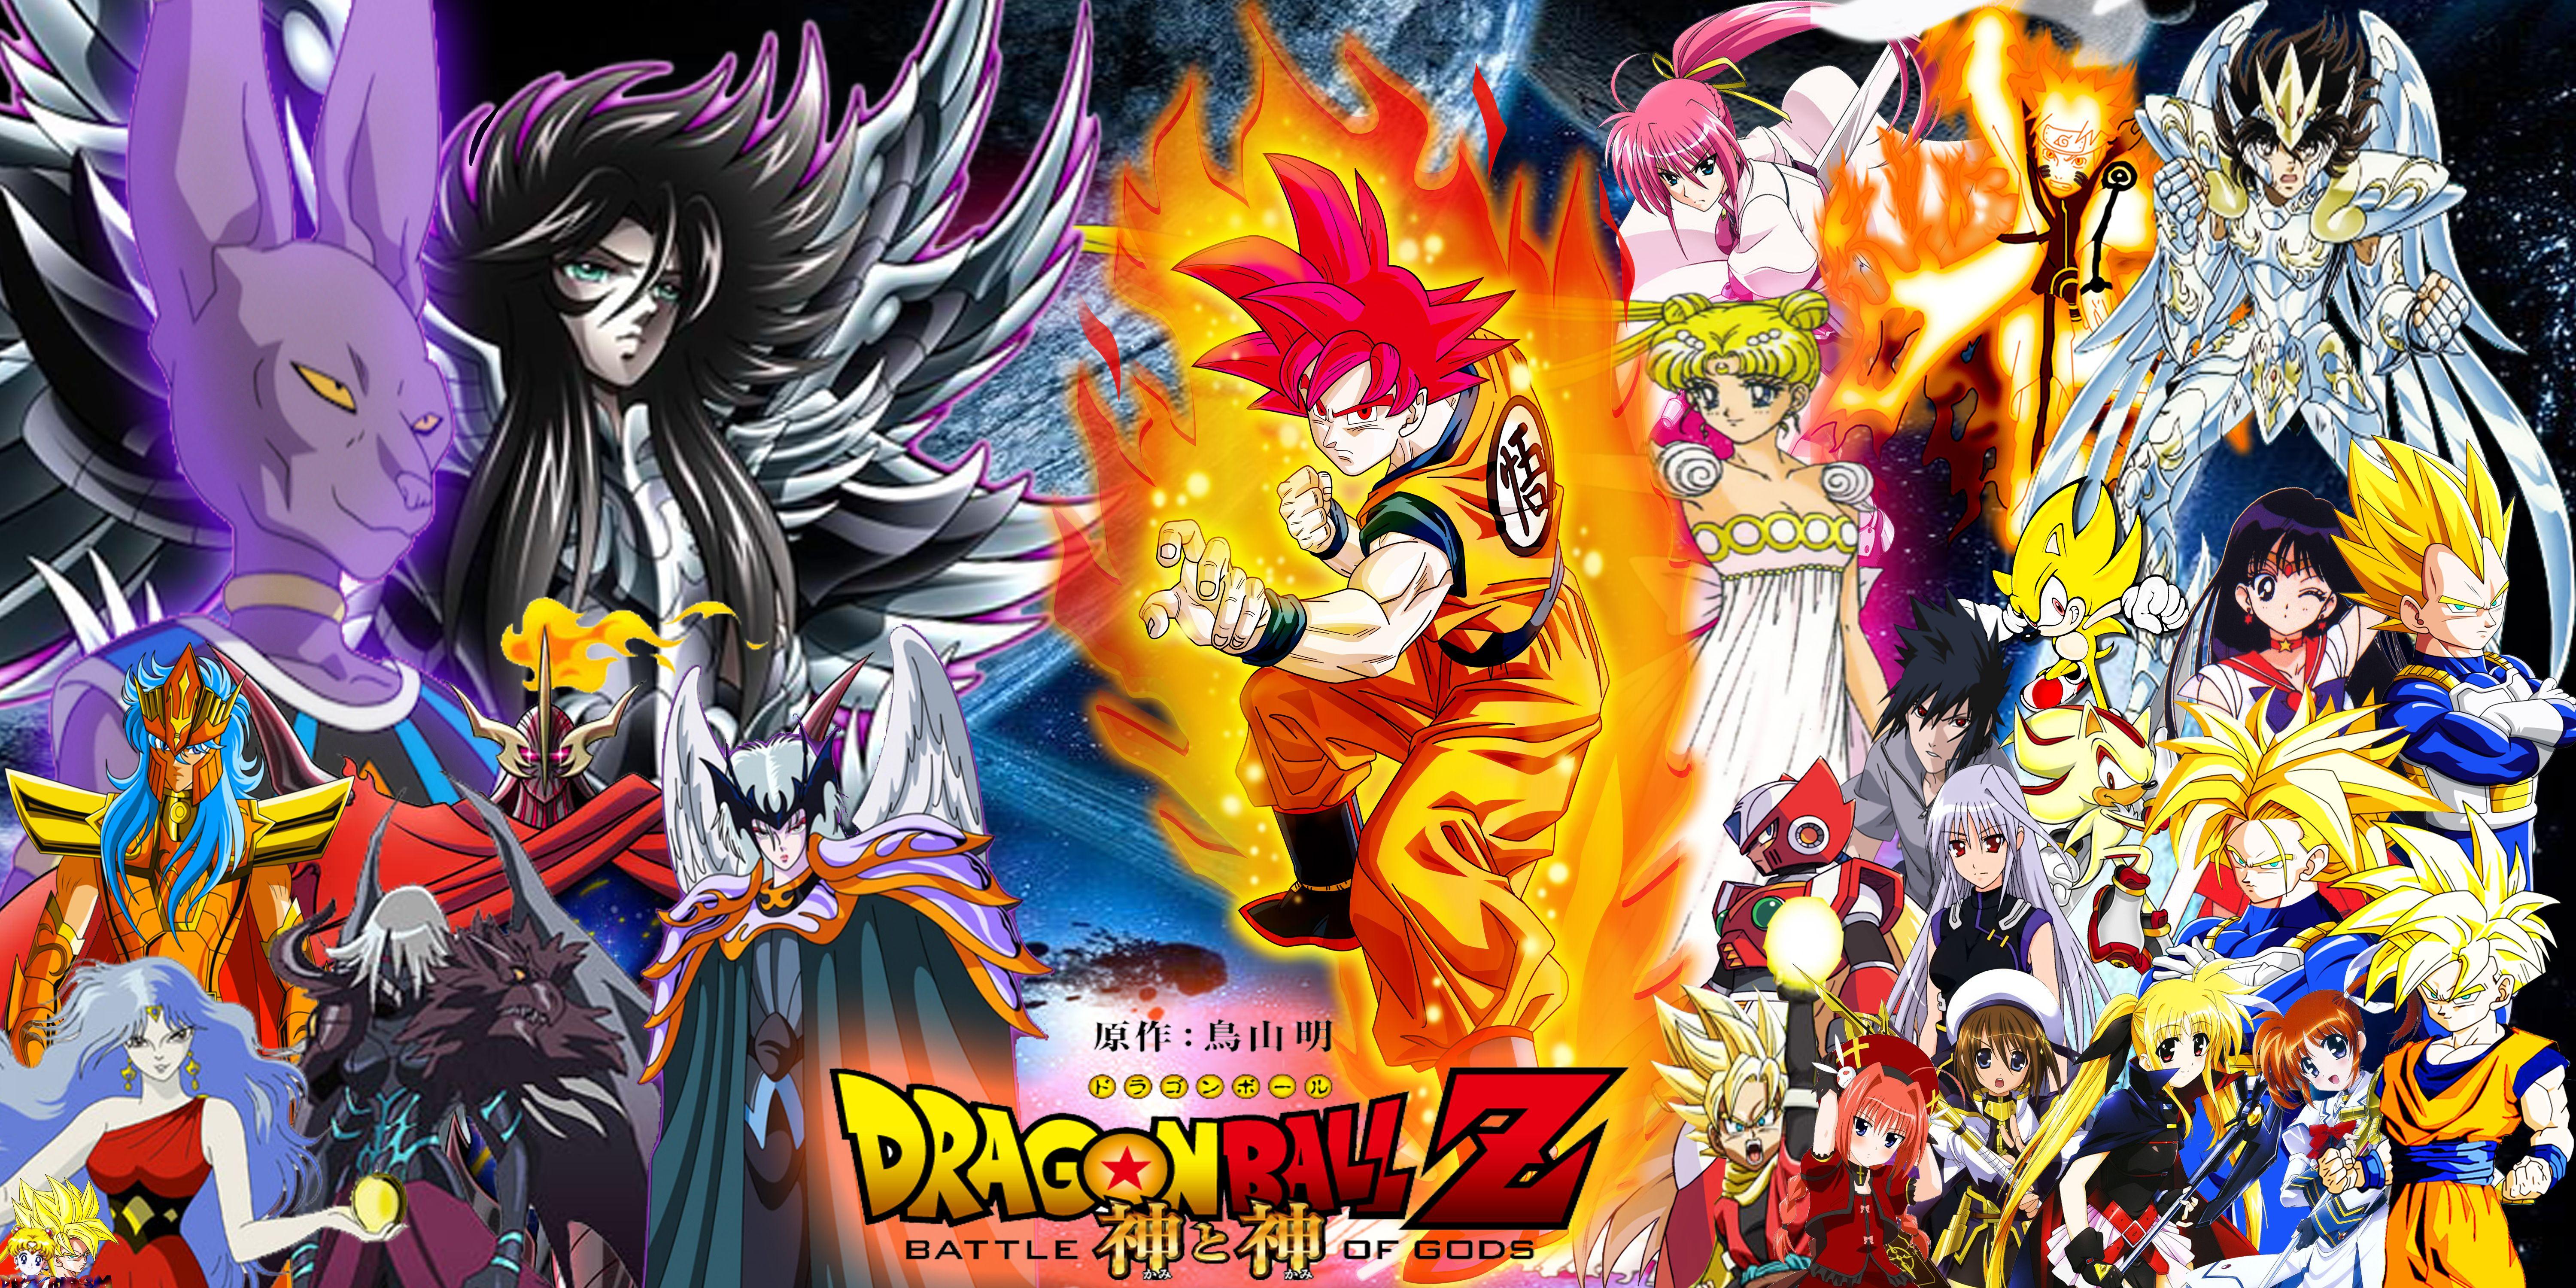 Dragon Ball Z. Wallpaper HD free Download. Dragon ball wallpaper, Dragon ball wallpaper iphone, Dragon ball z iphone wallpaper